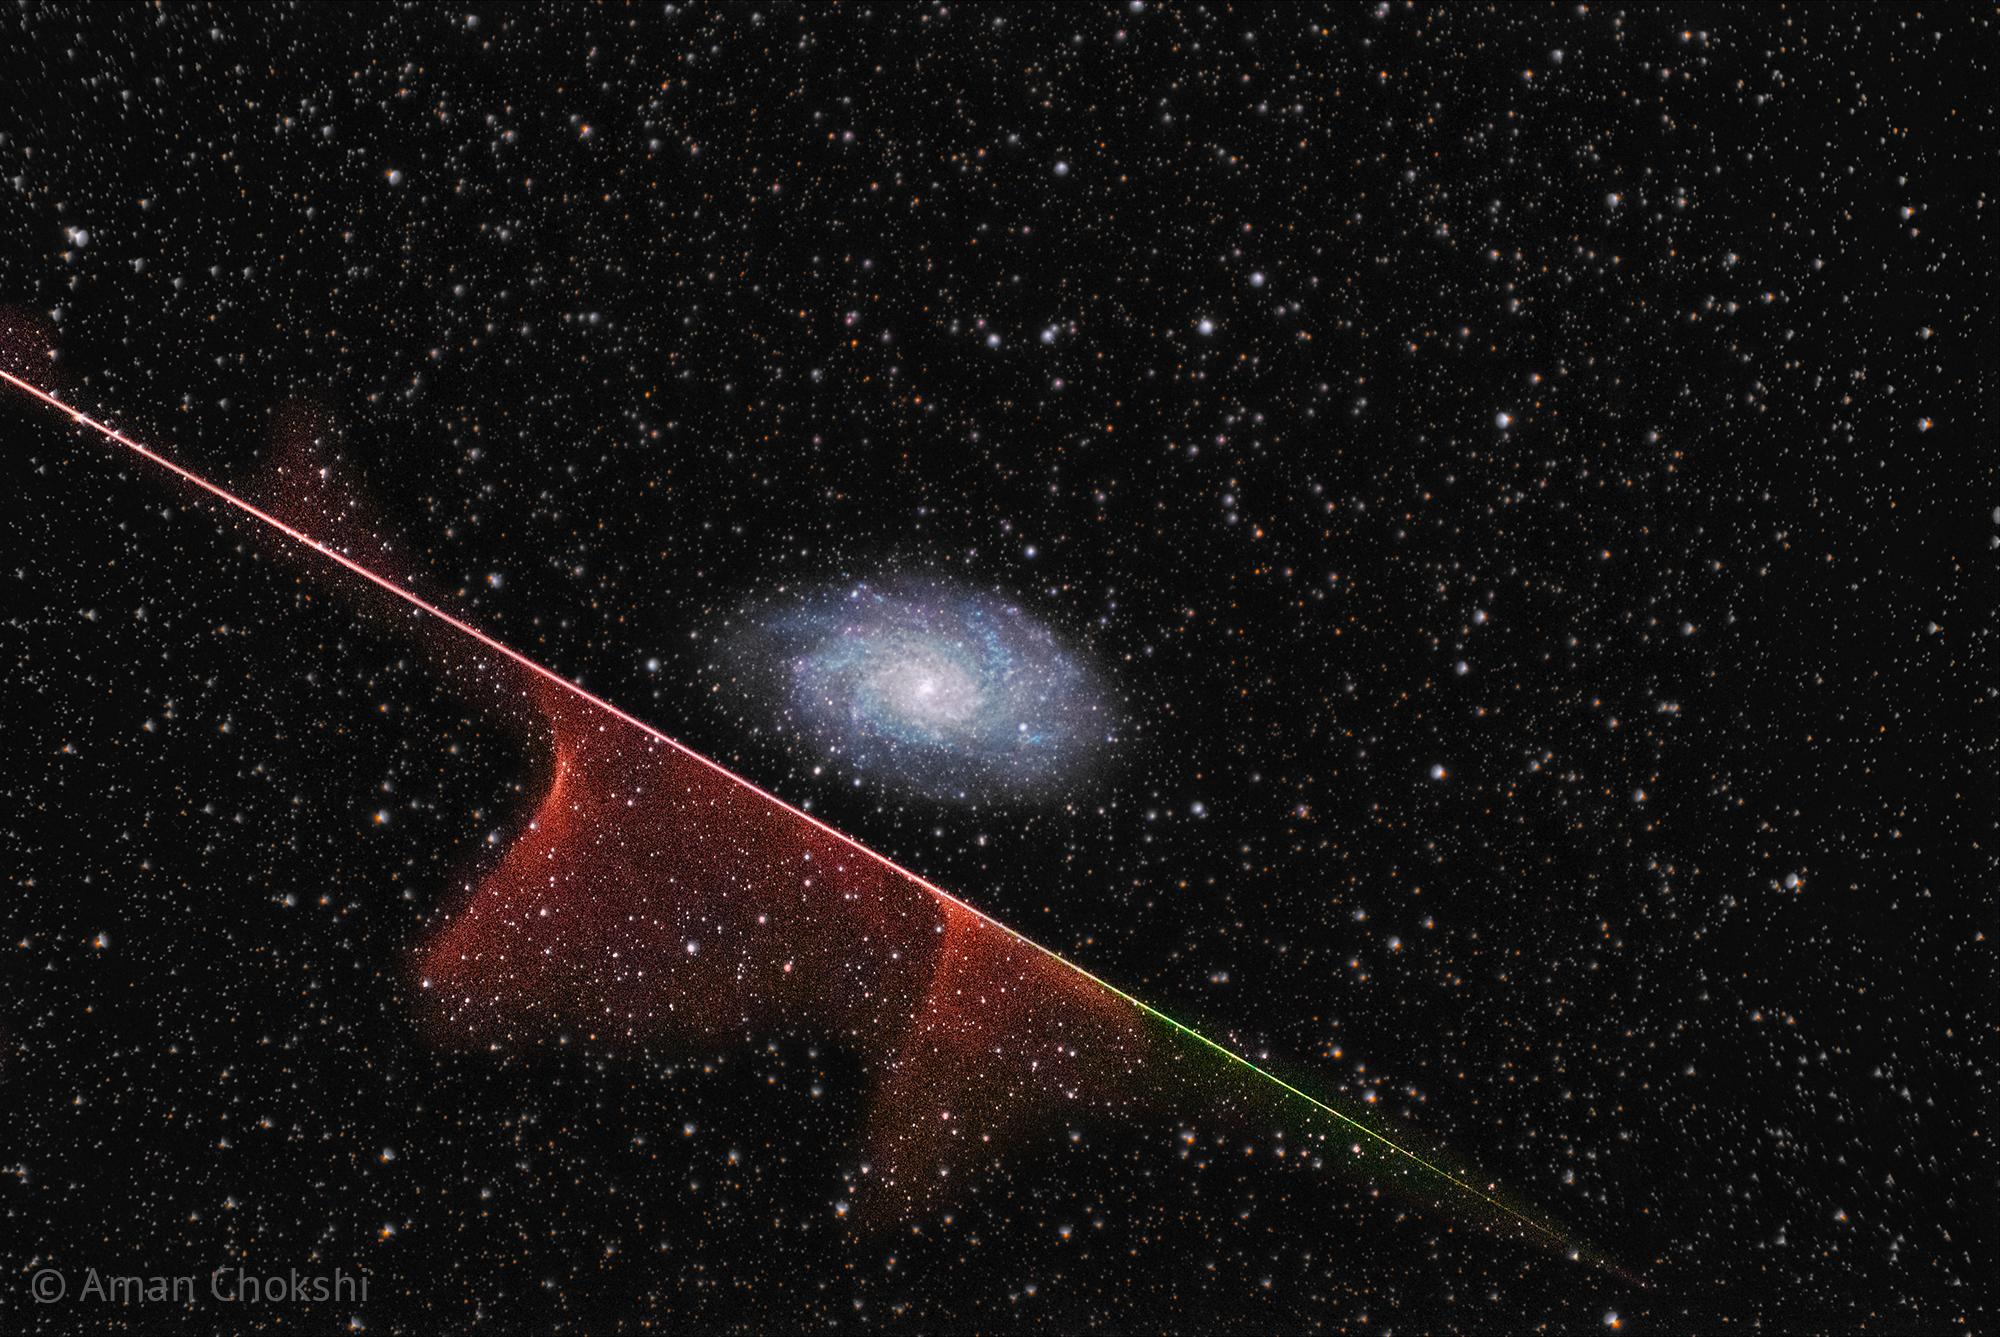 مجرّة حلزونيّة بعيدة في مركز الإطار يعبر تحتها من أعلى اليسار إلى أسفل اليمين خطٌّ مُتعدّد الألوان تظهر أغبرة مُتلاشية قرب بعض أجزائه. تتناثر النجوم عبر الصورة.